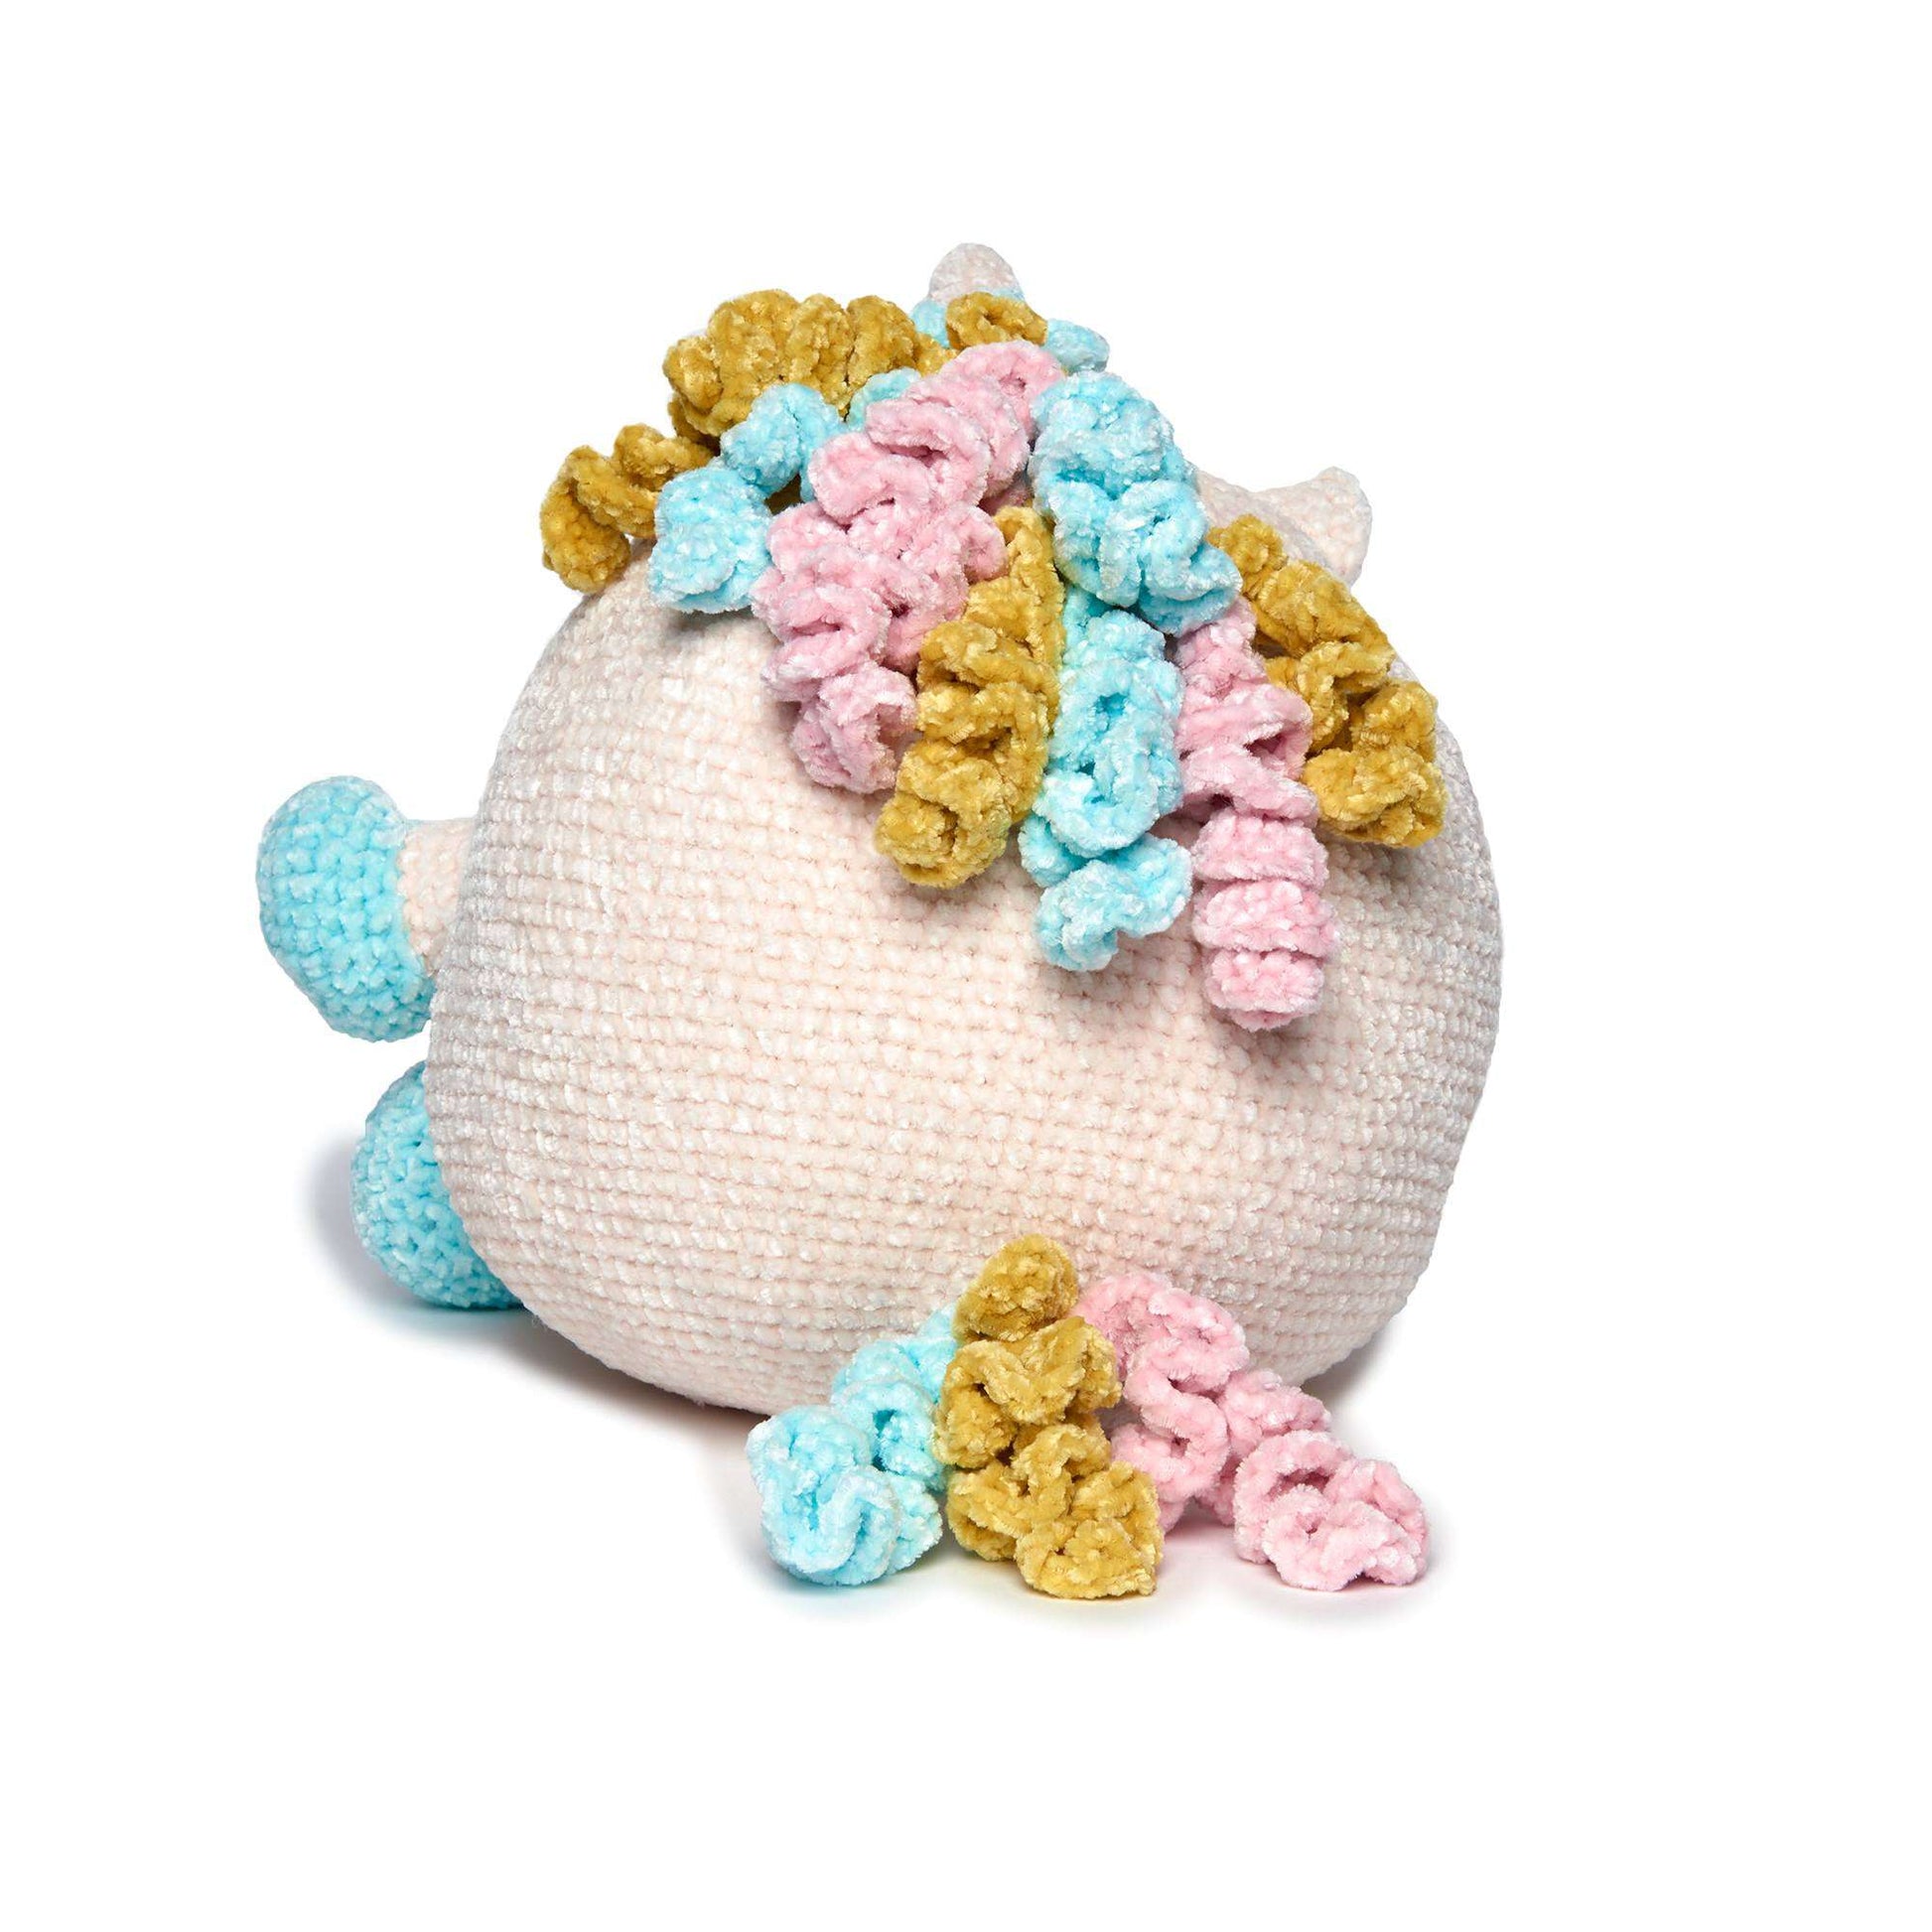 Free Bernat Crochet Unicorn Stuffie Pattern